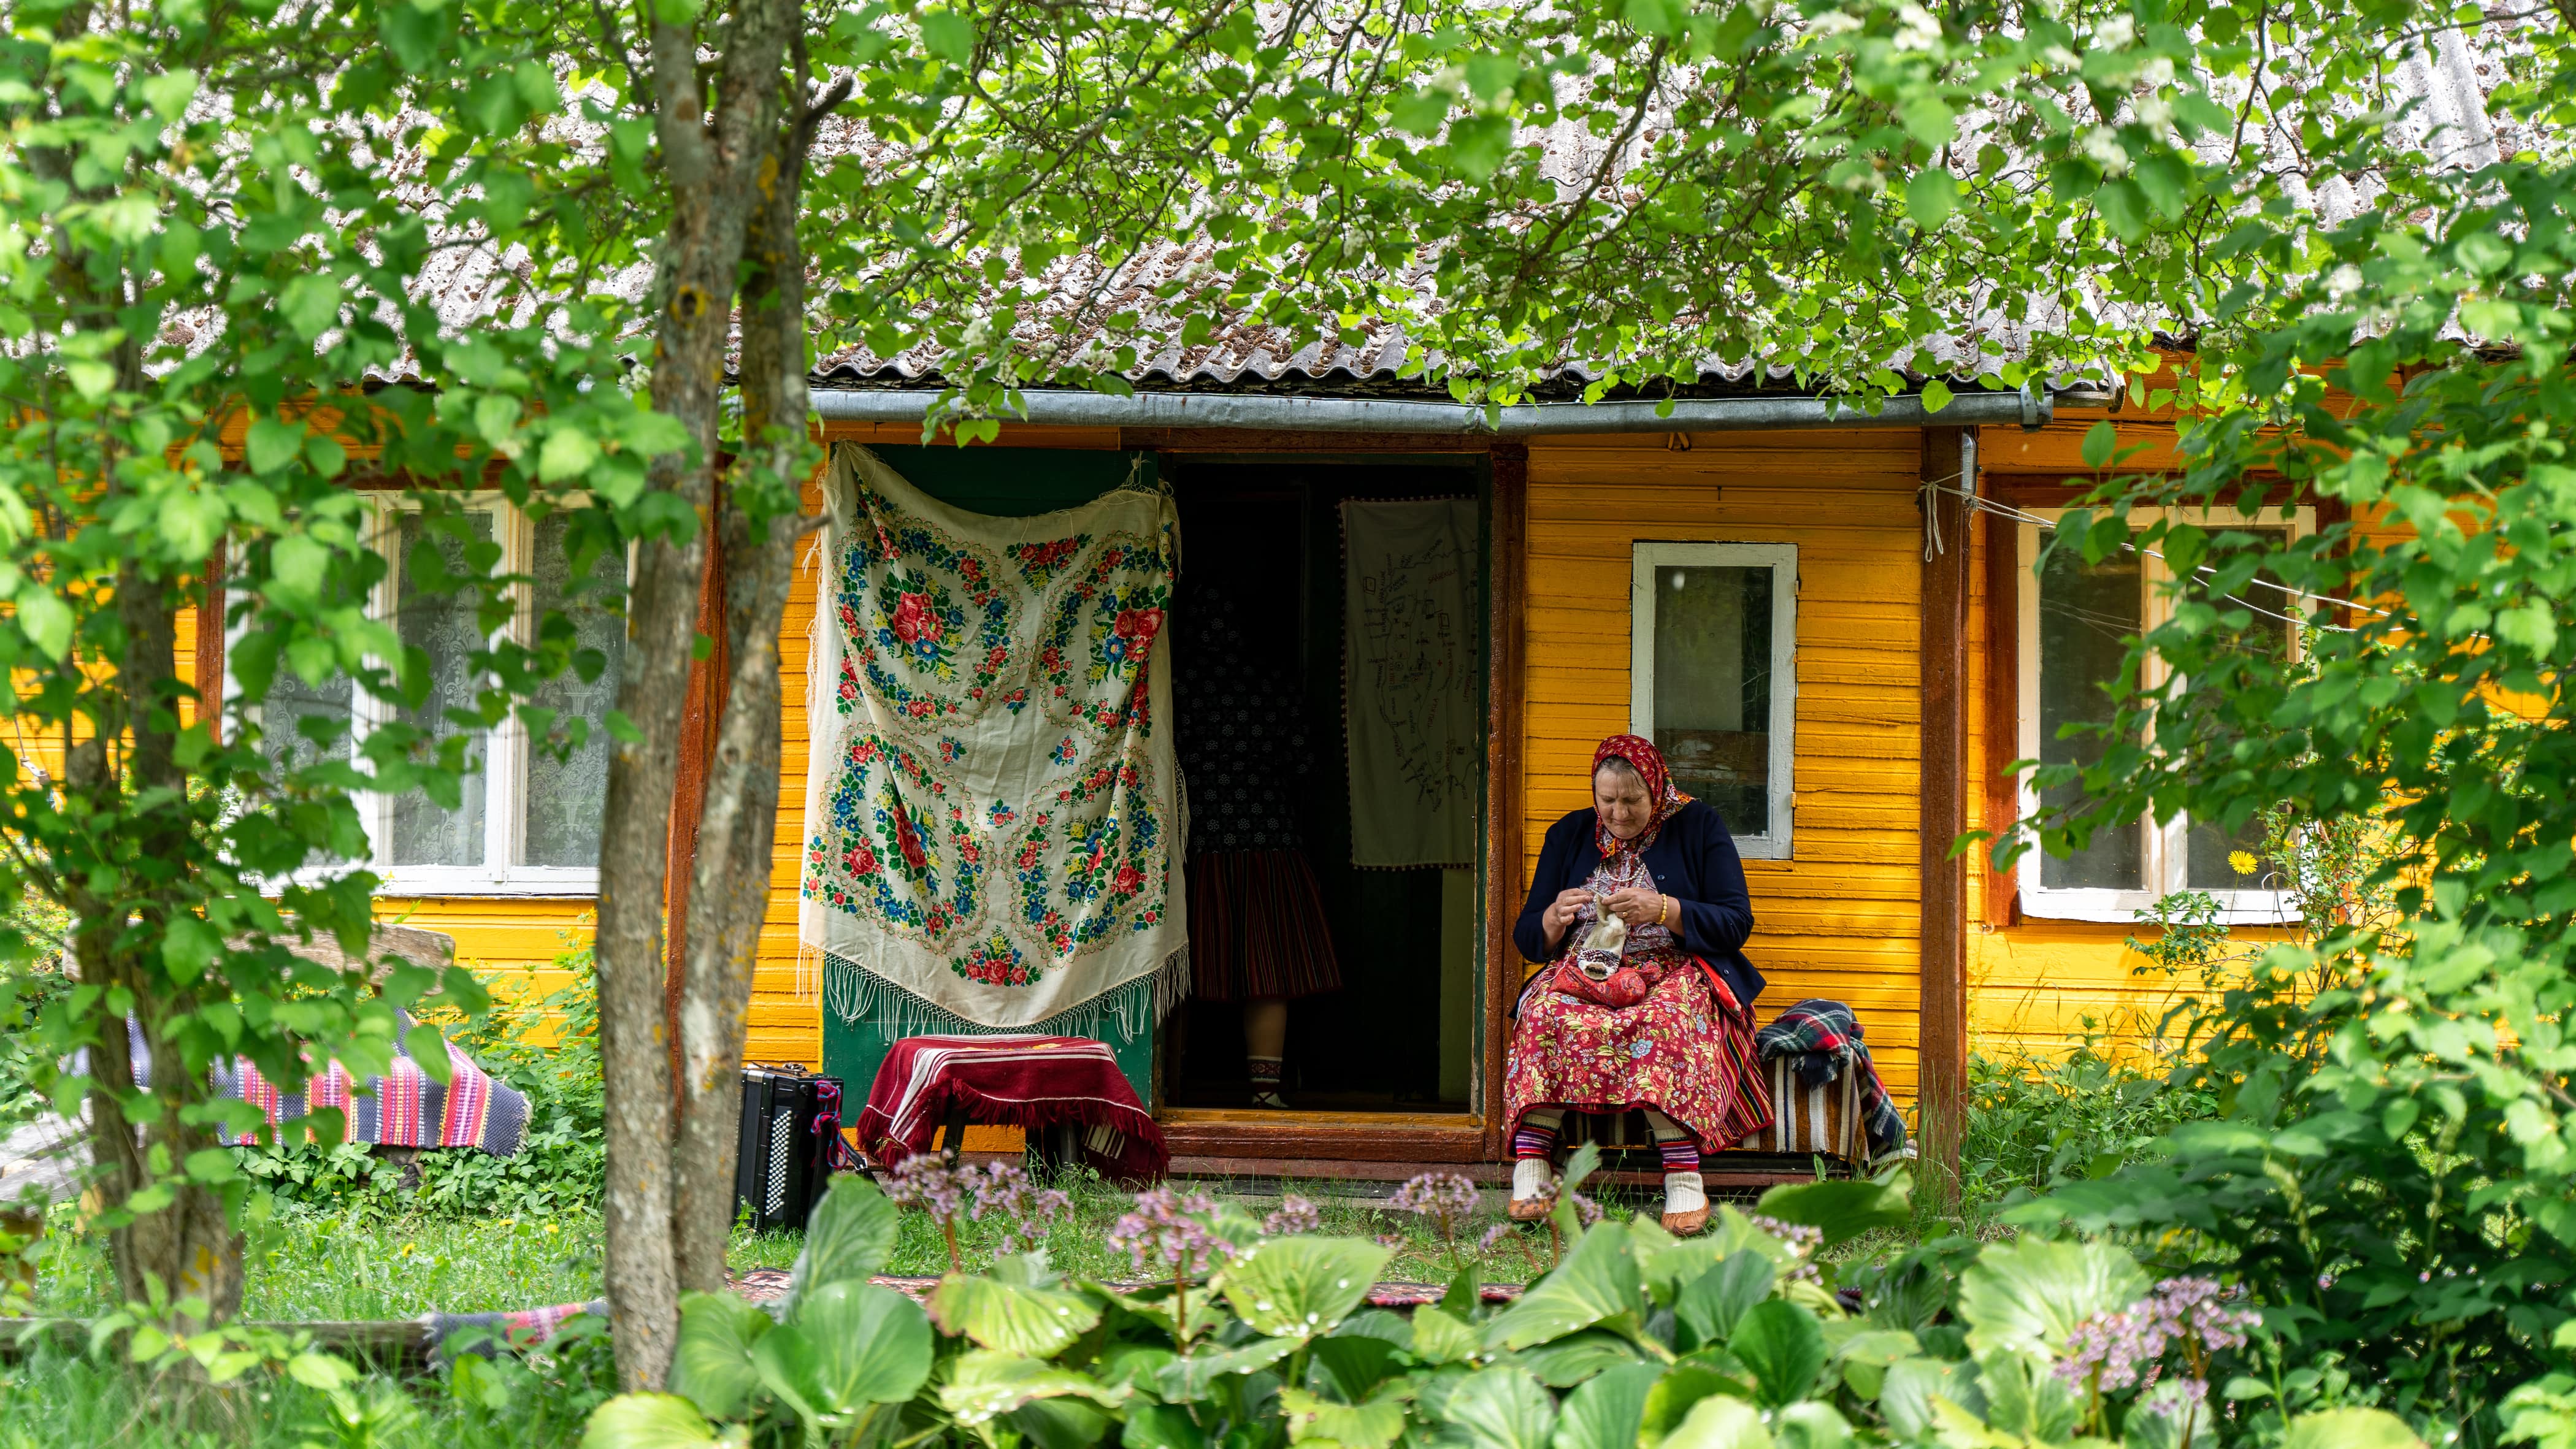 A glimpse of life on Estonia's remote Kihnu Island